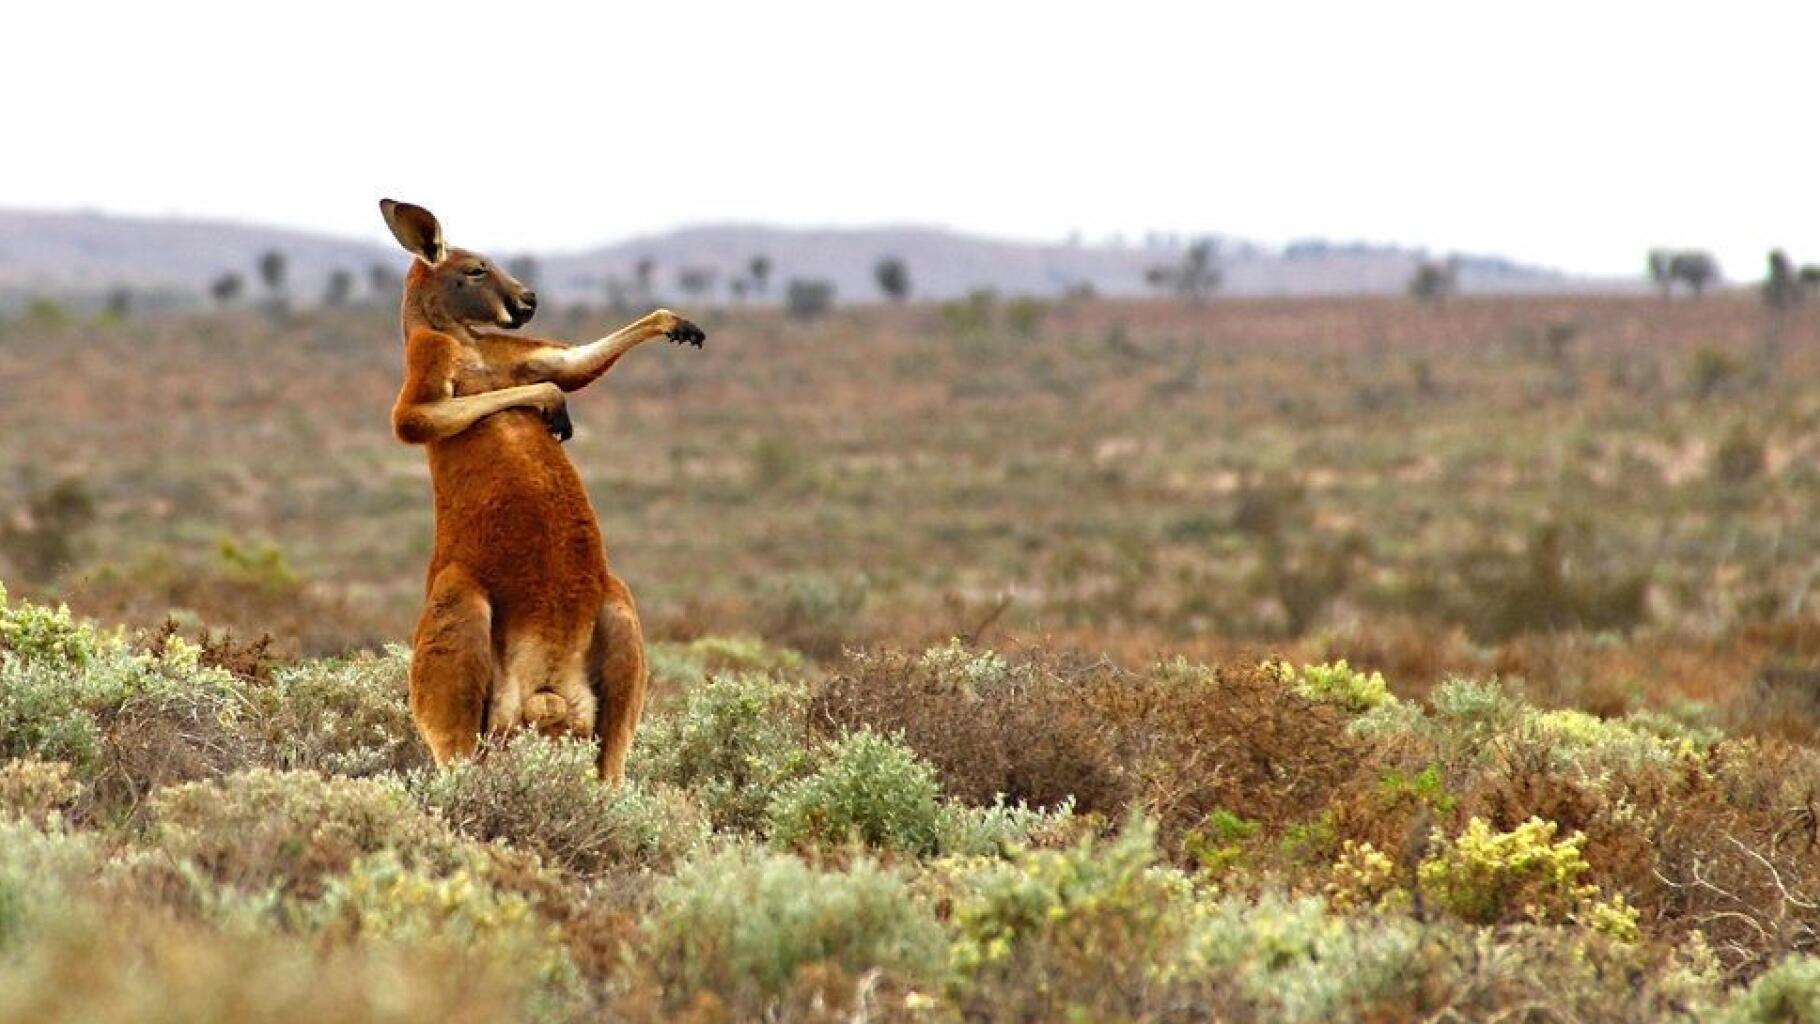 De eerste dodelijke kangoeroe-aanval in Australië sinds 1936